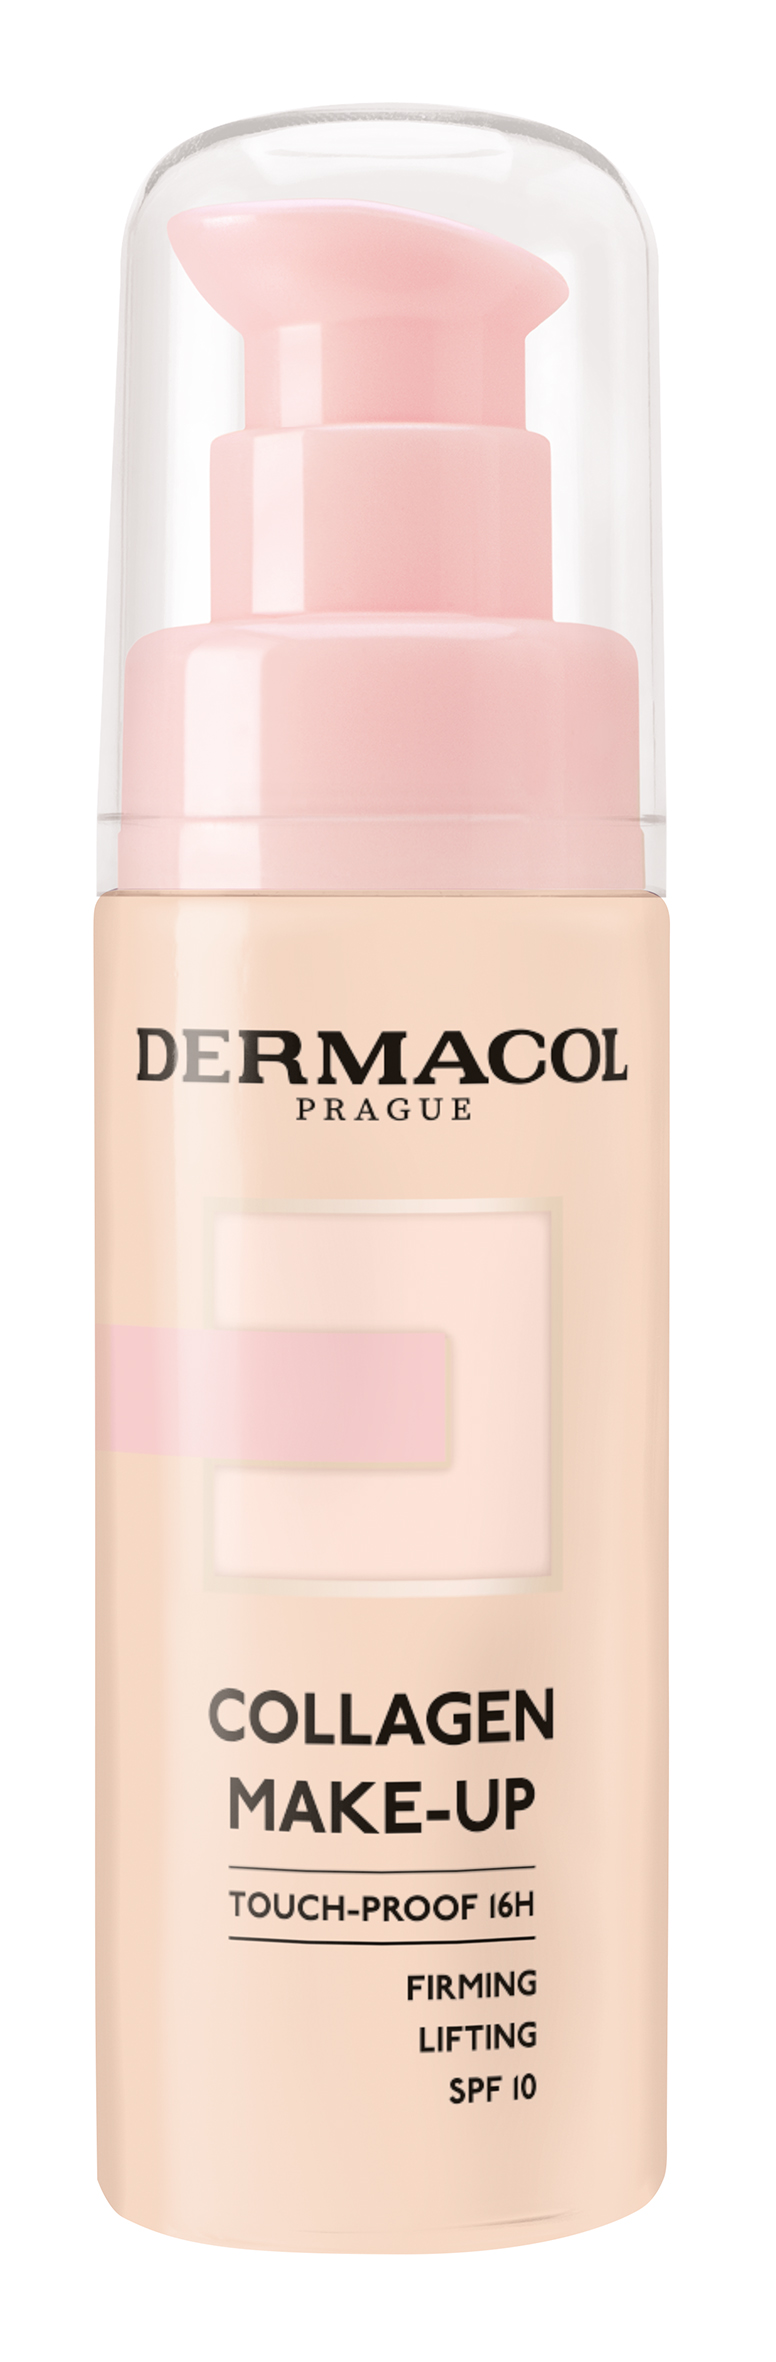 Dermacol Lehký make-up s kolagenem (Collagen Make-Up) 20 ml 2.0 Fair